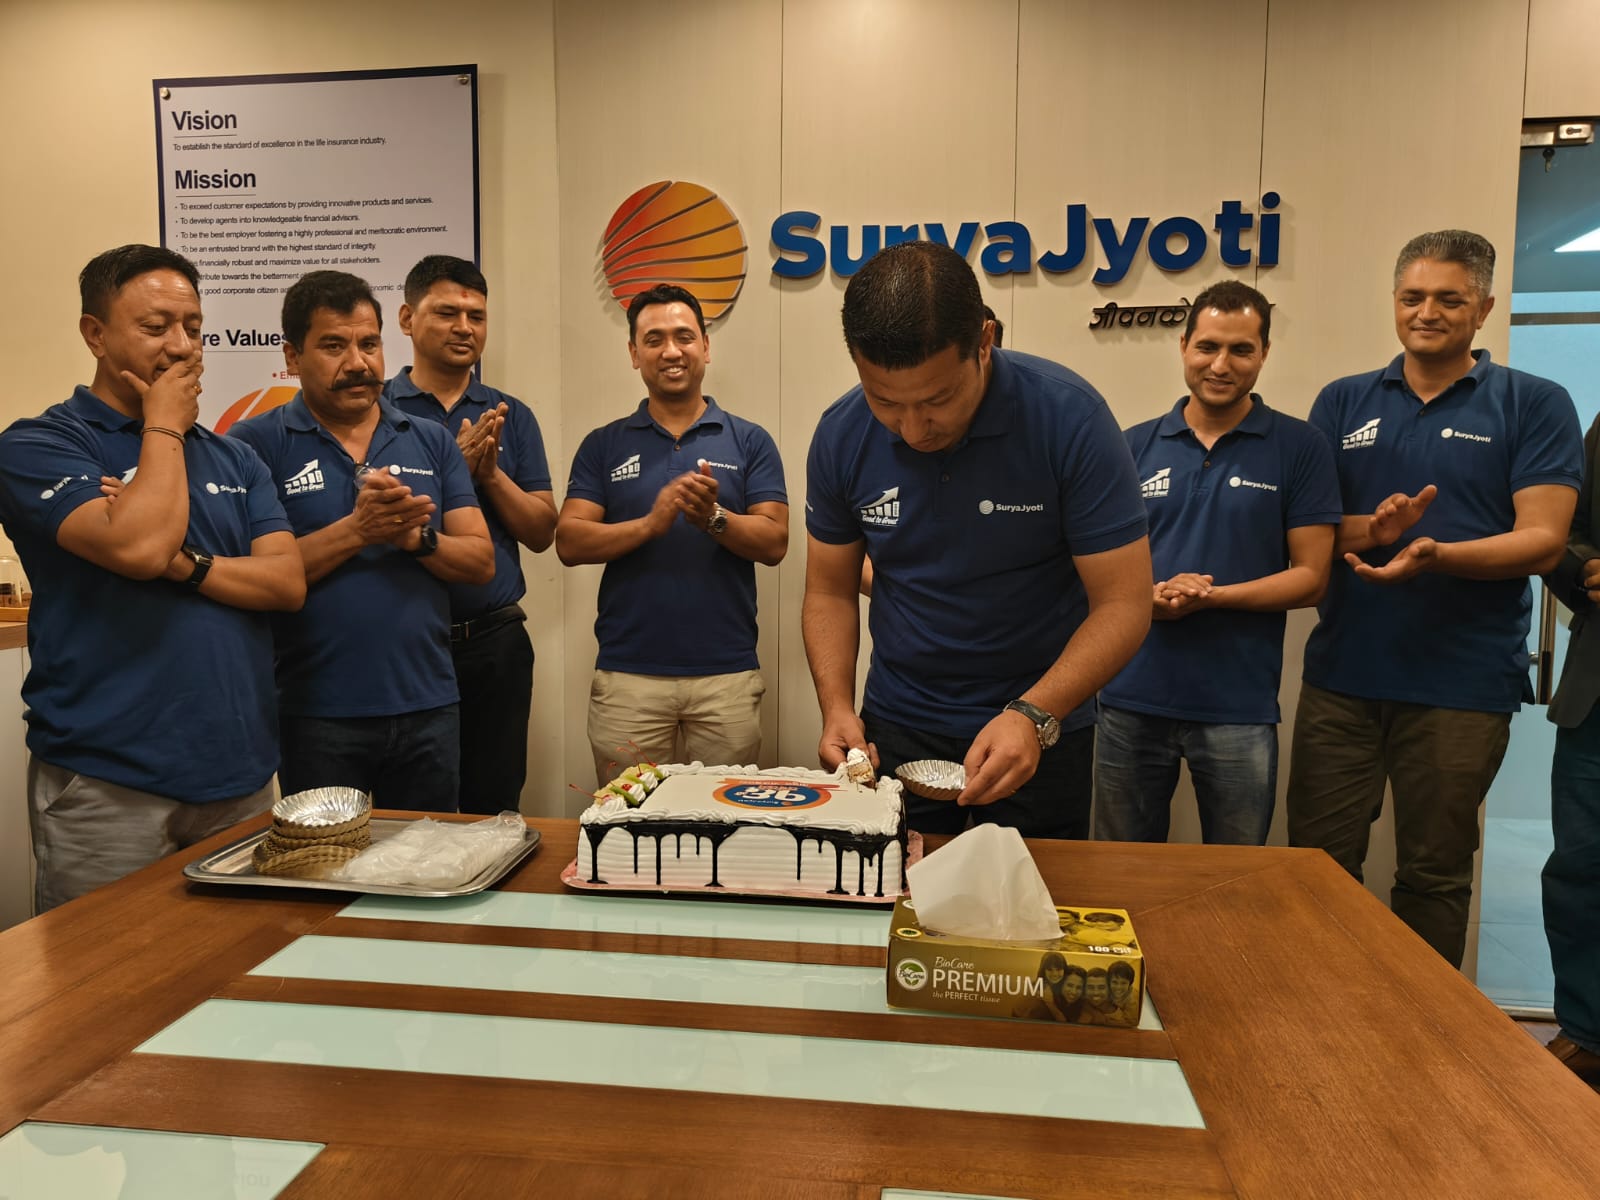 Surya Jyoti celebrated its 16th anniversary